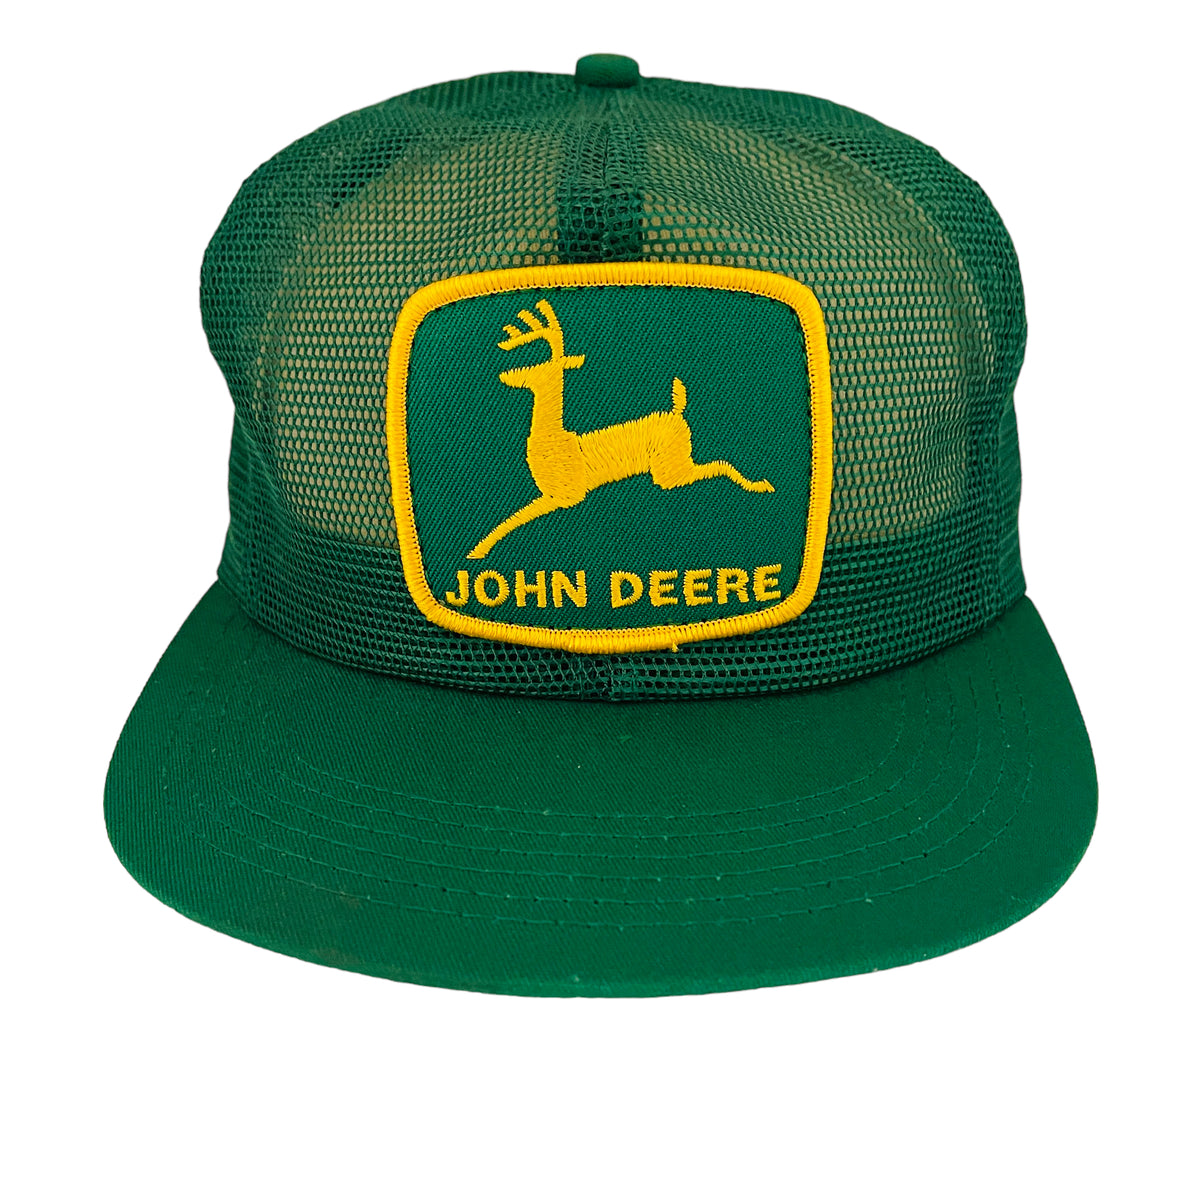 Vintage mesh back cap John Deere